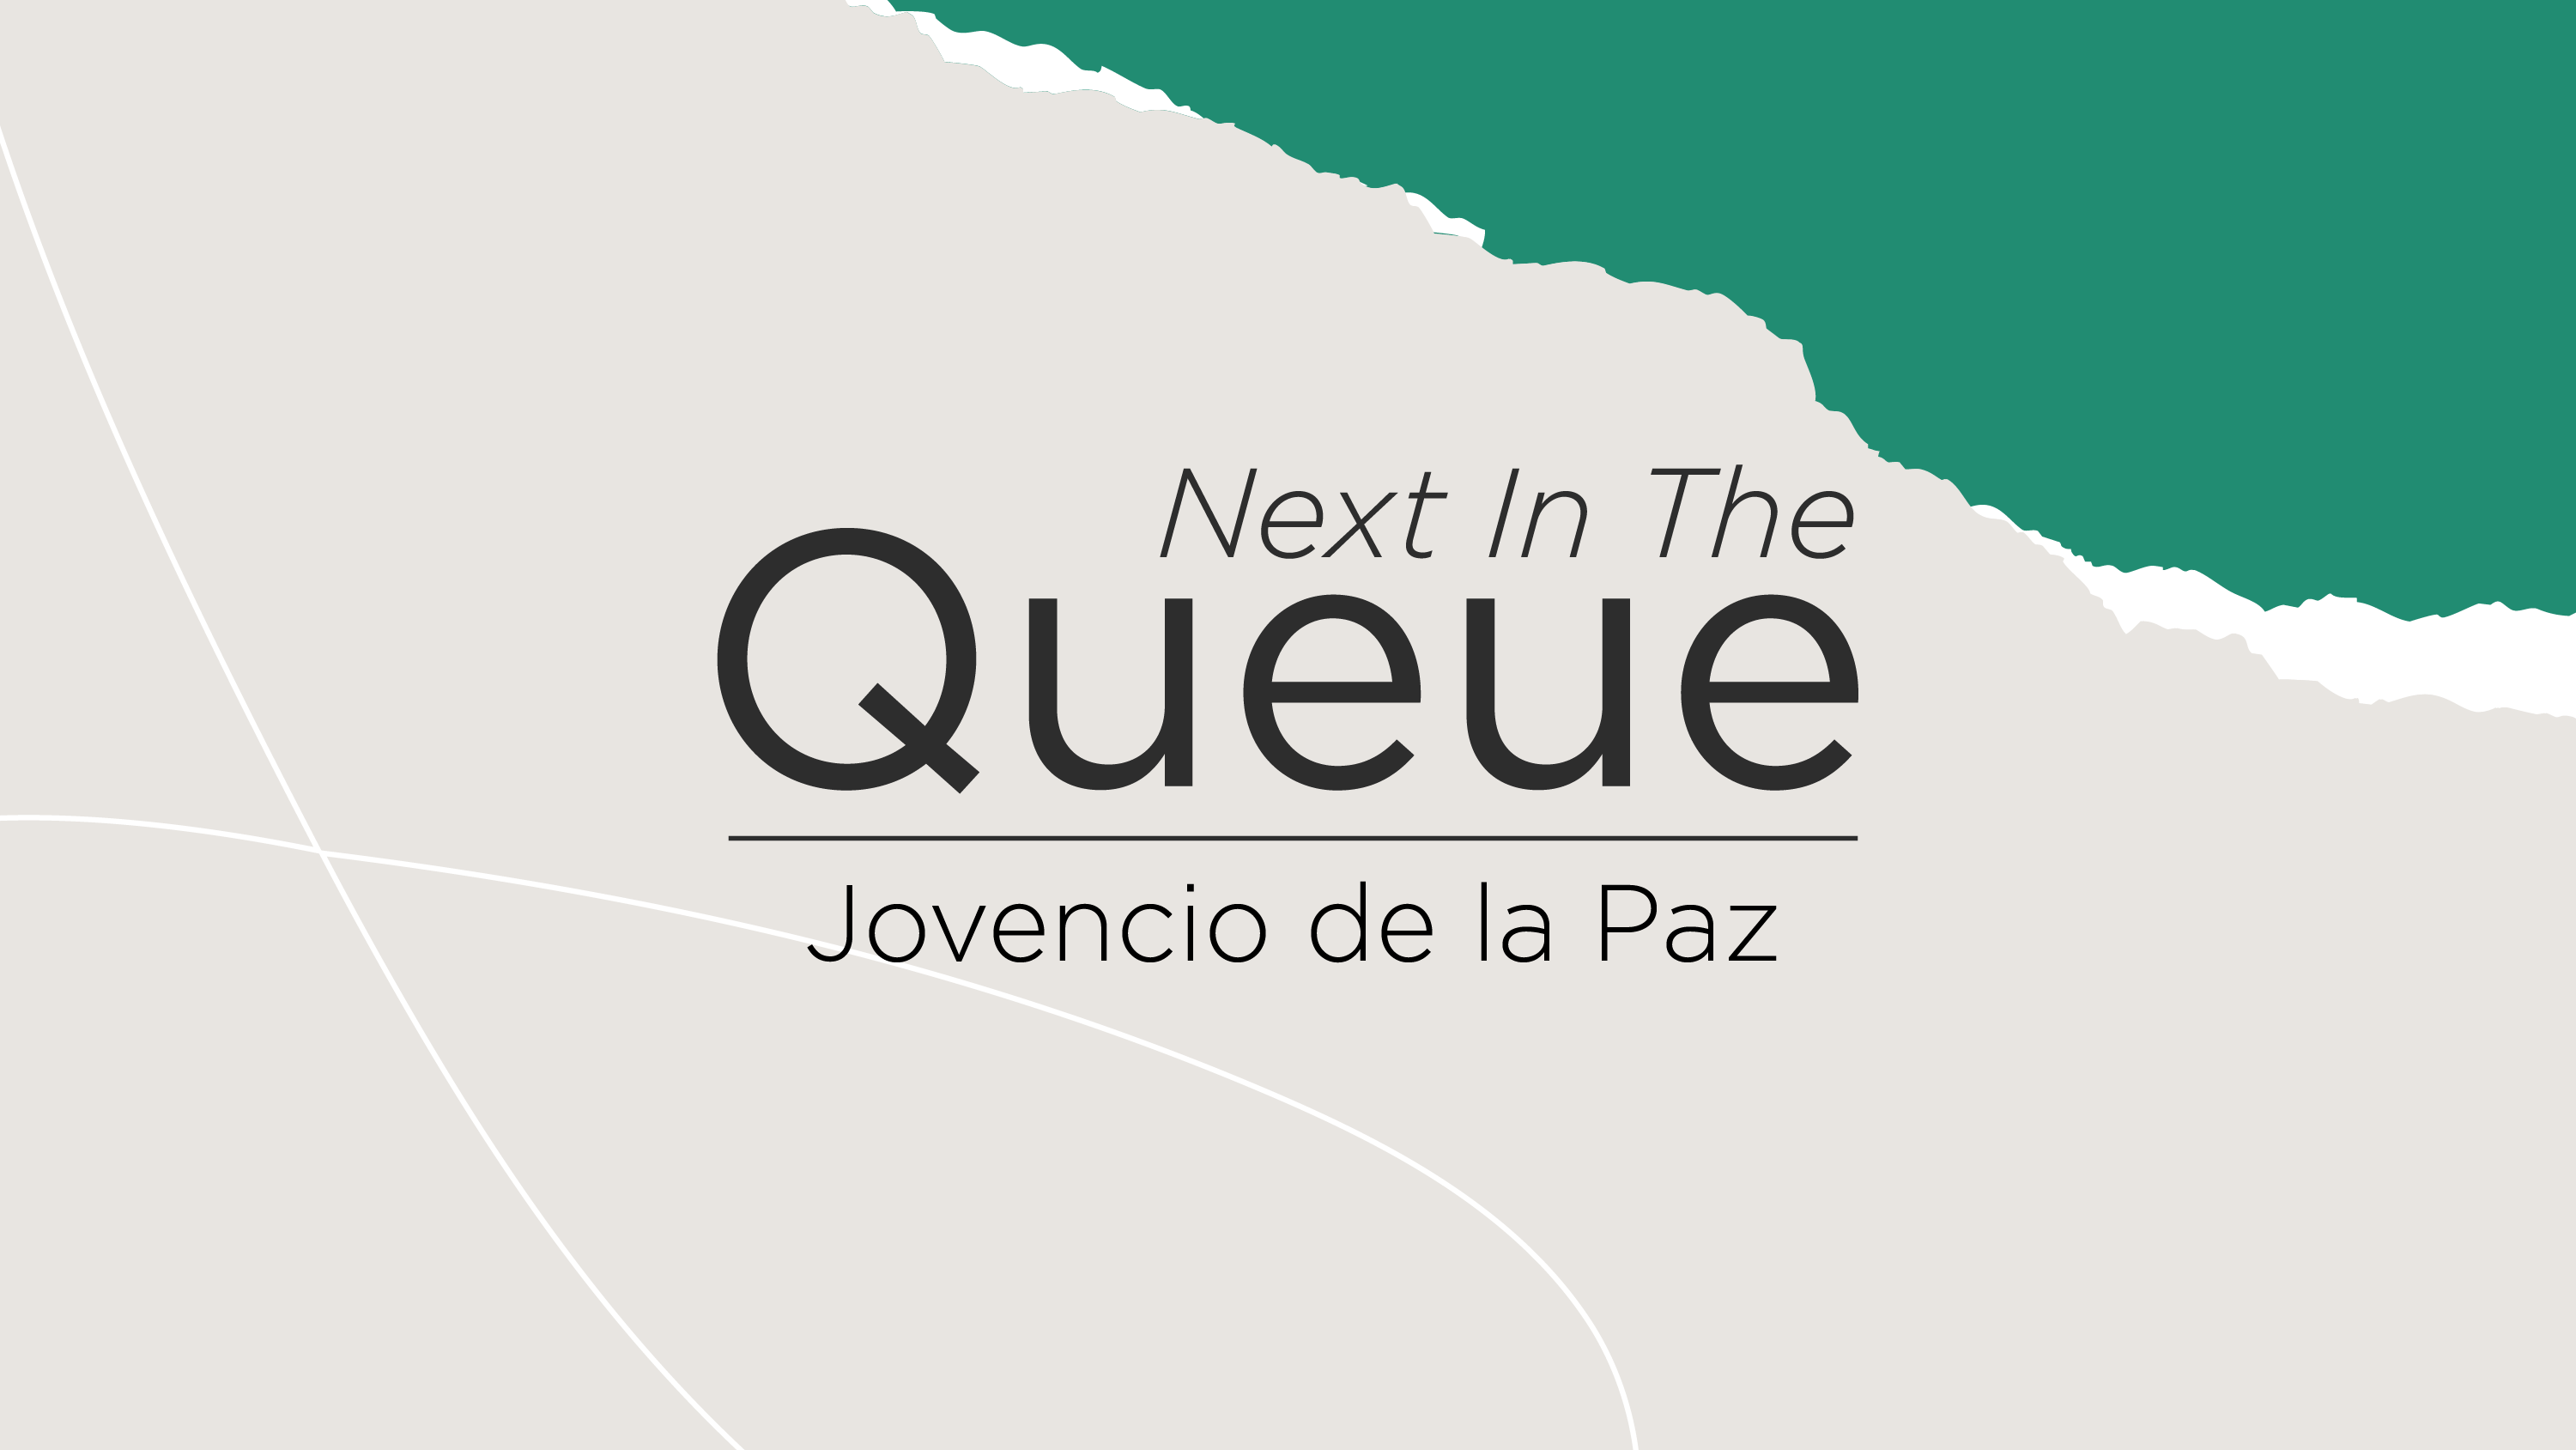 blog post cover graphic for The Queue featuring Jovencio de la Paz